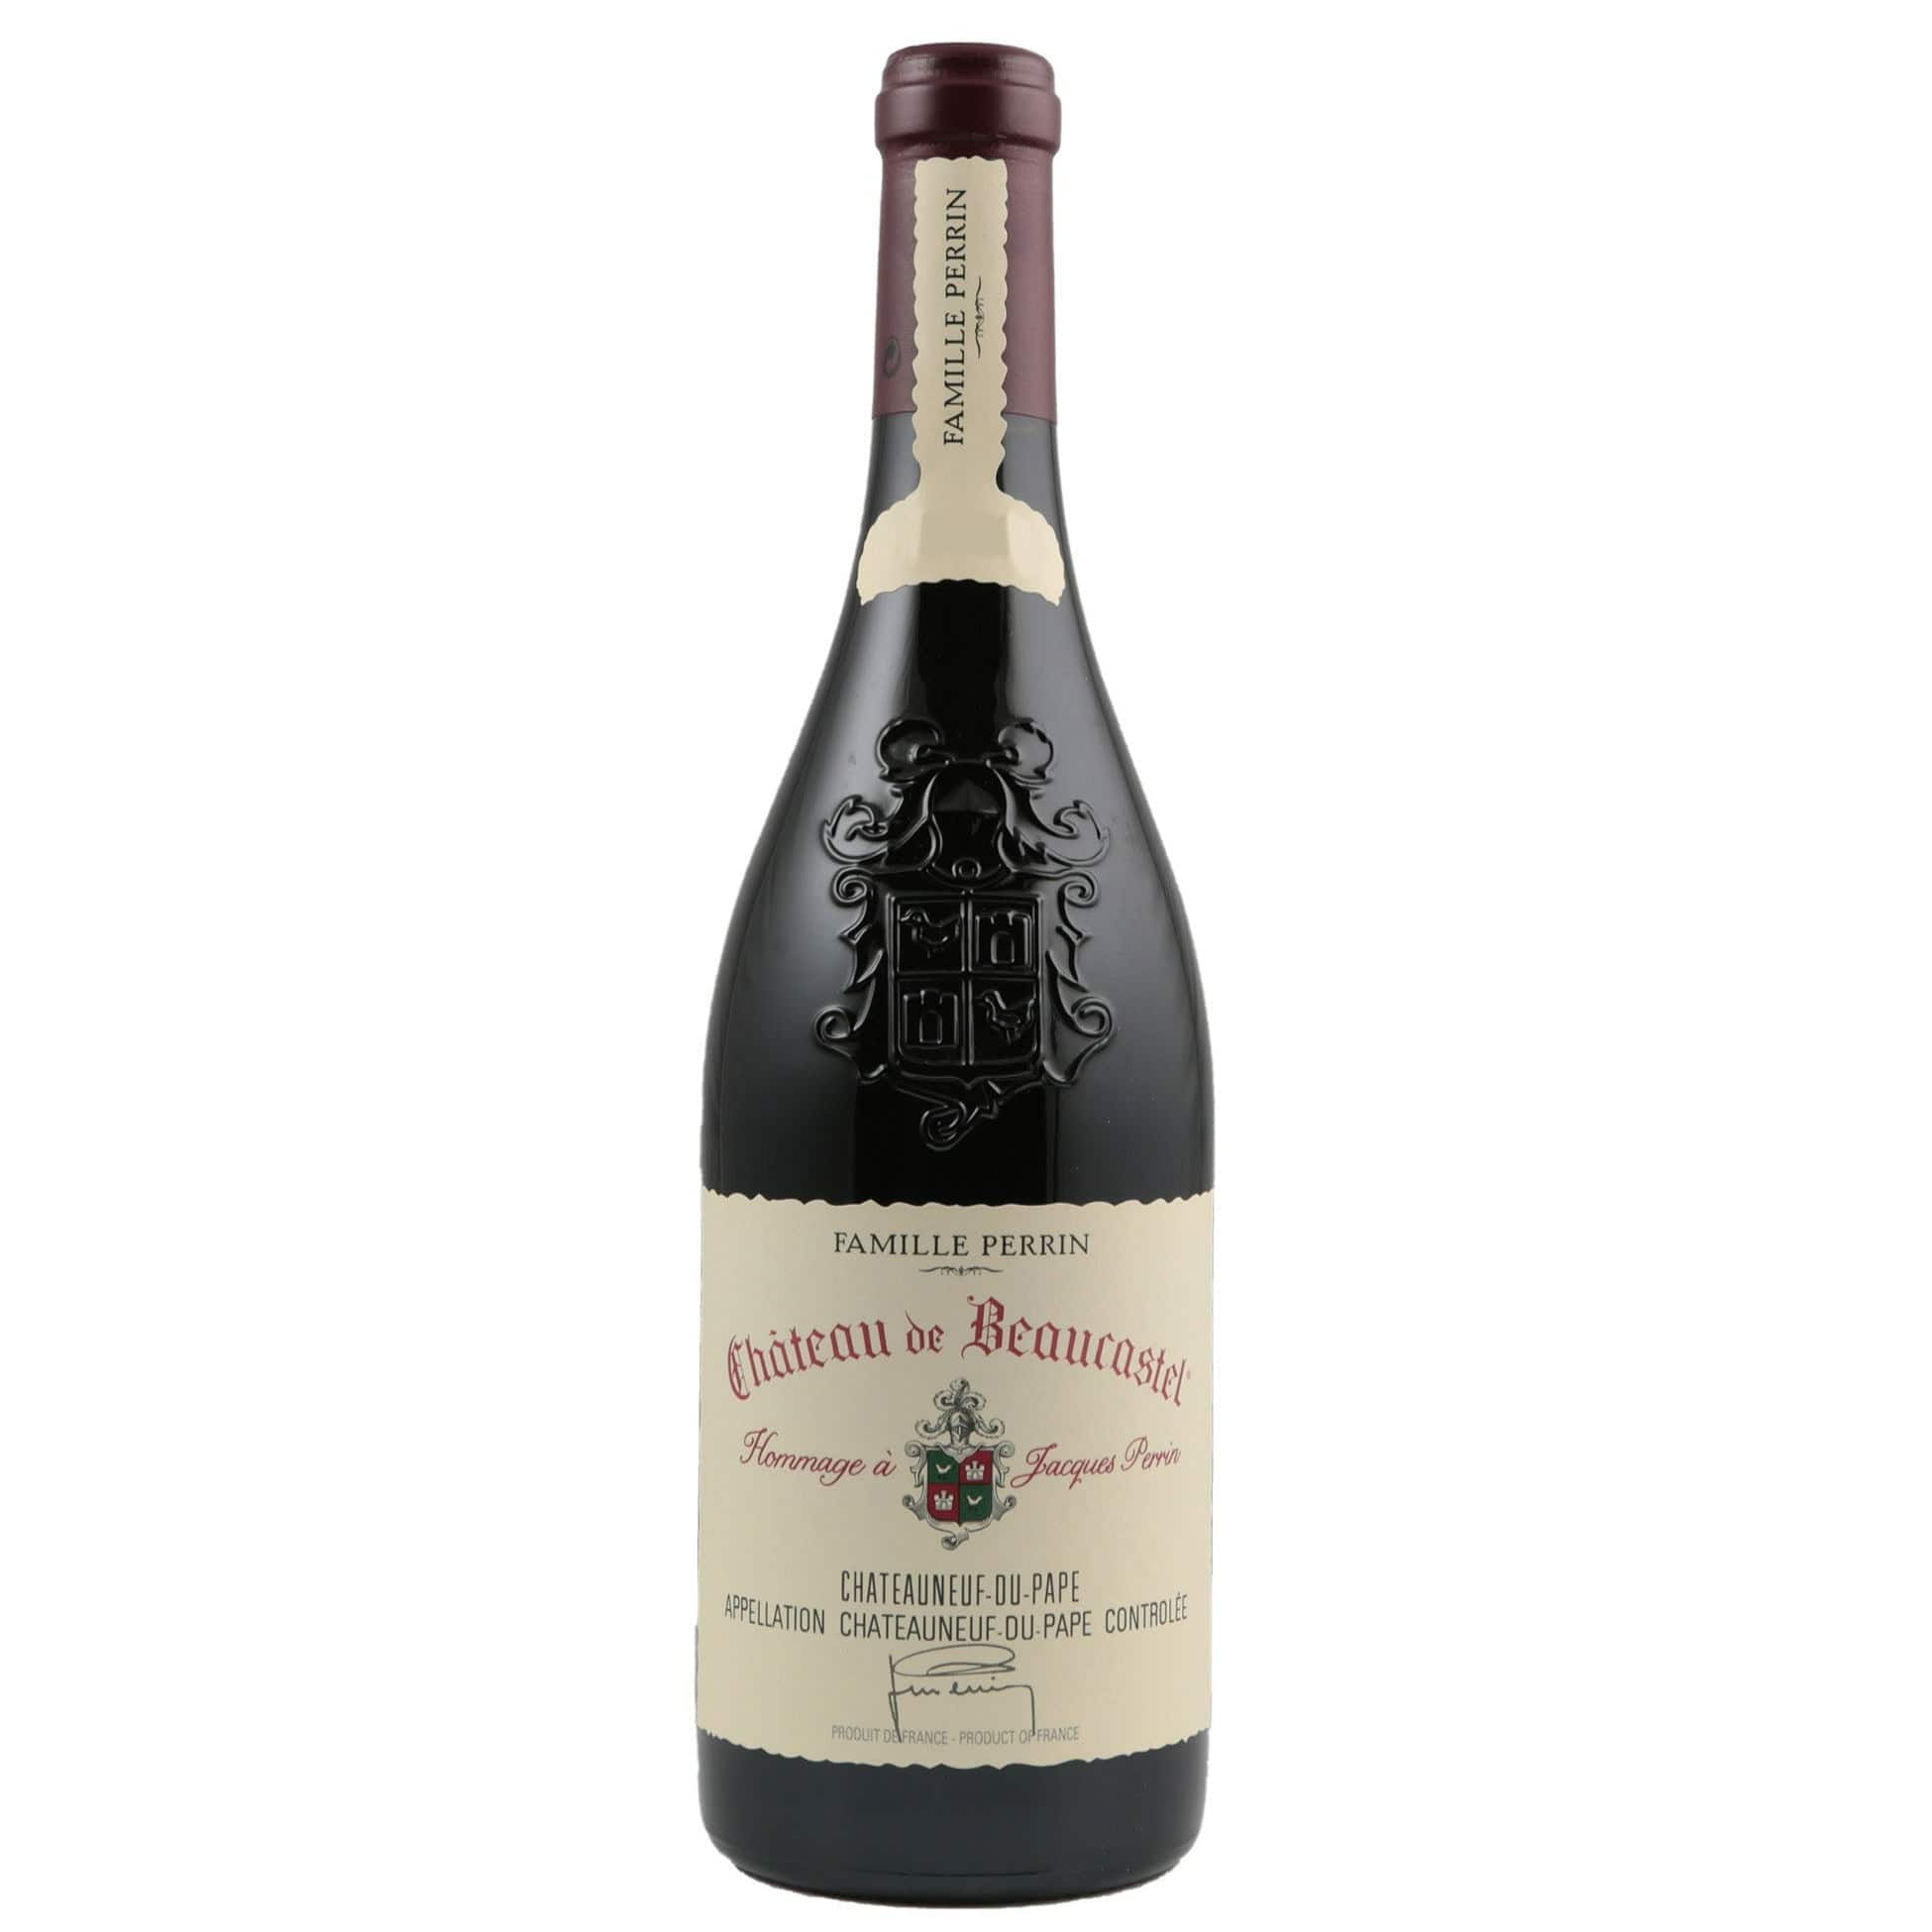 Single bottle of Red wine Chateau de Beaucastel, Chateauneuf du Pape, 1996 Grenache, Mourvedre, Syrah, Counoise & Cinsault